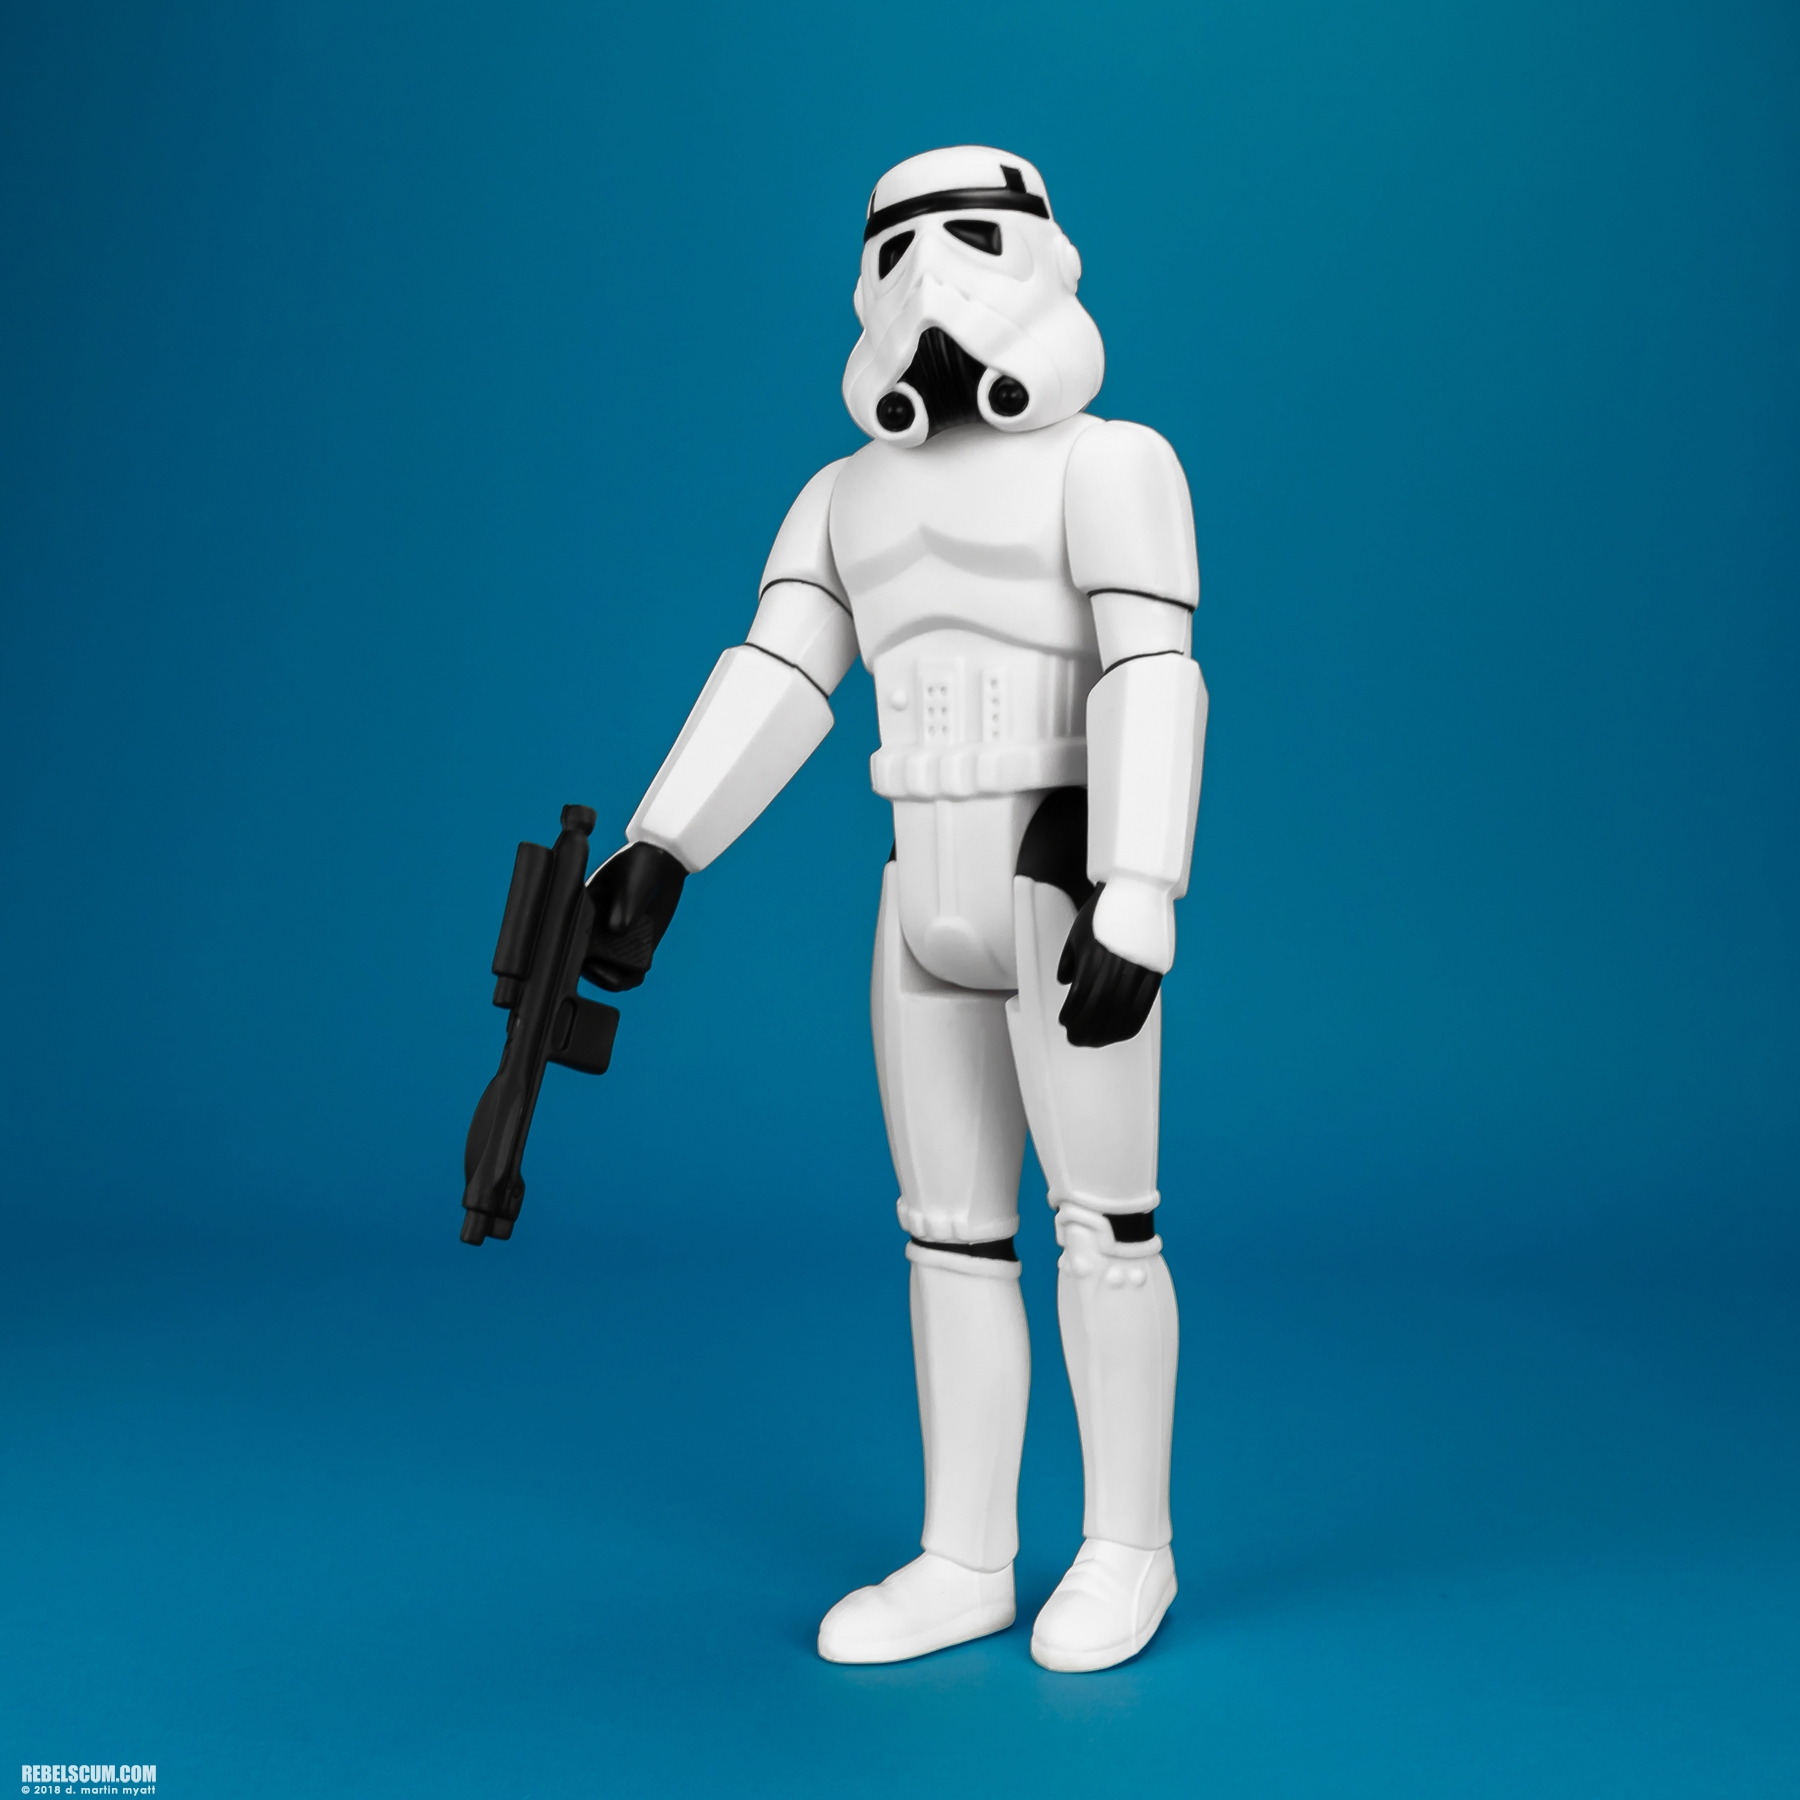 Luke-Skywalker-Stormtrooper-Disguise-Jumbo-Kenner-Gentle-Giant-012.jpg